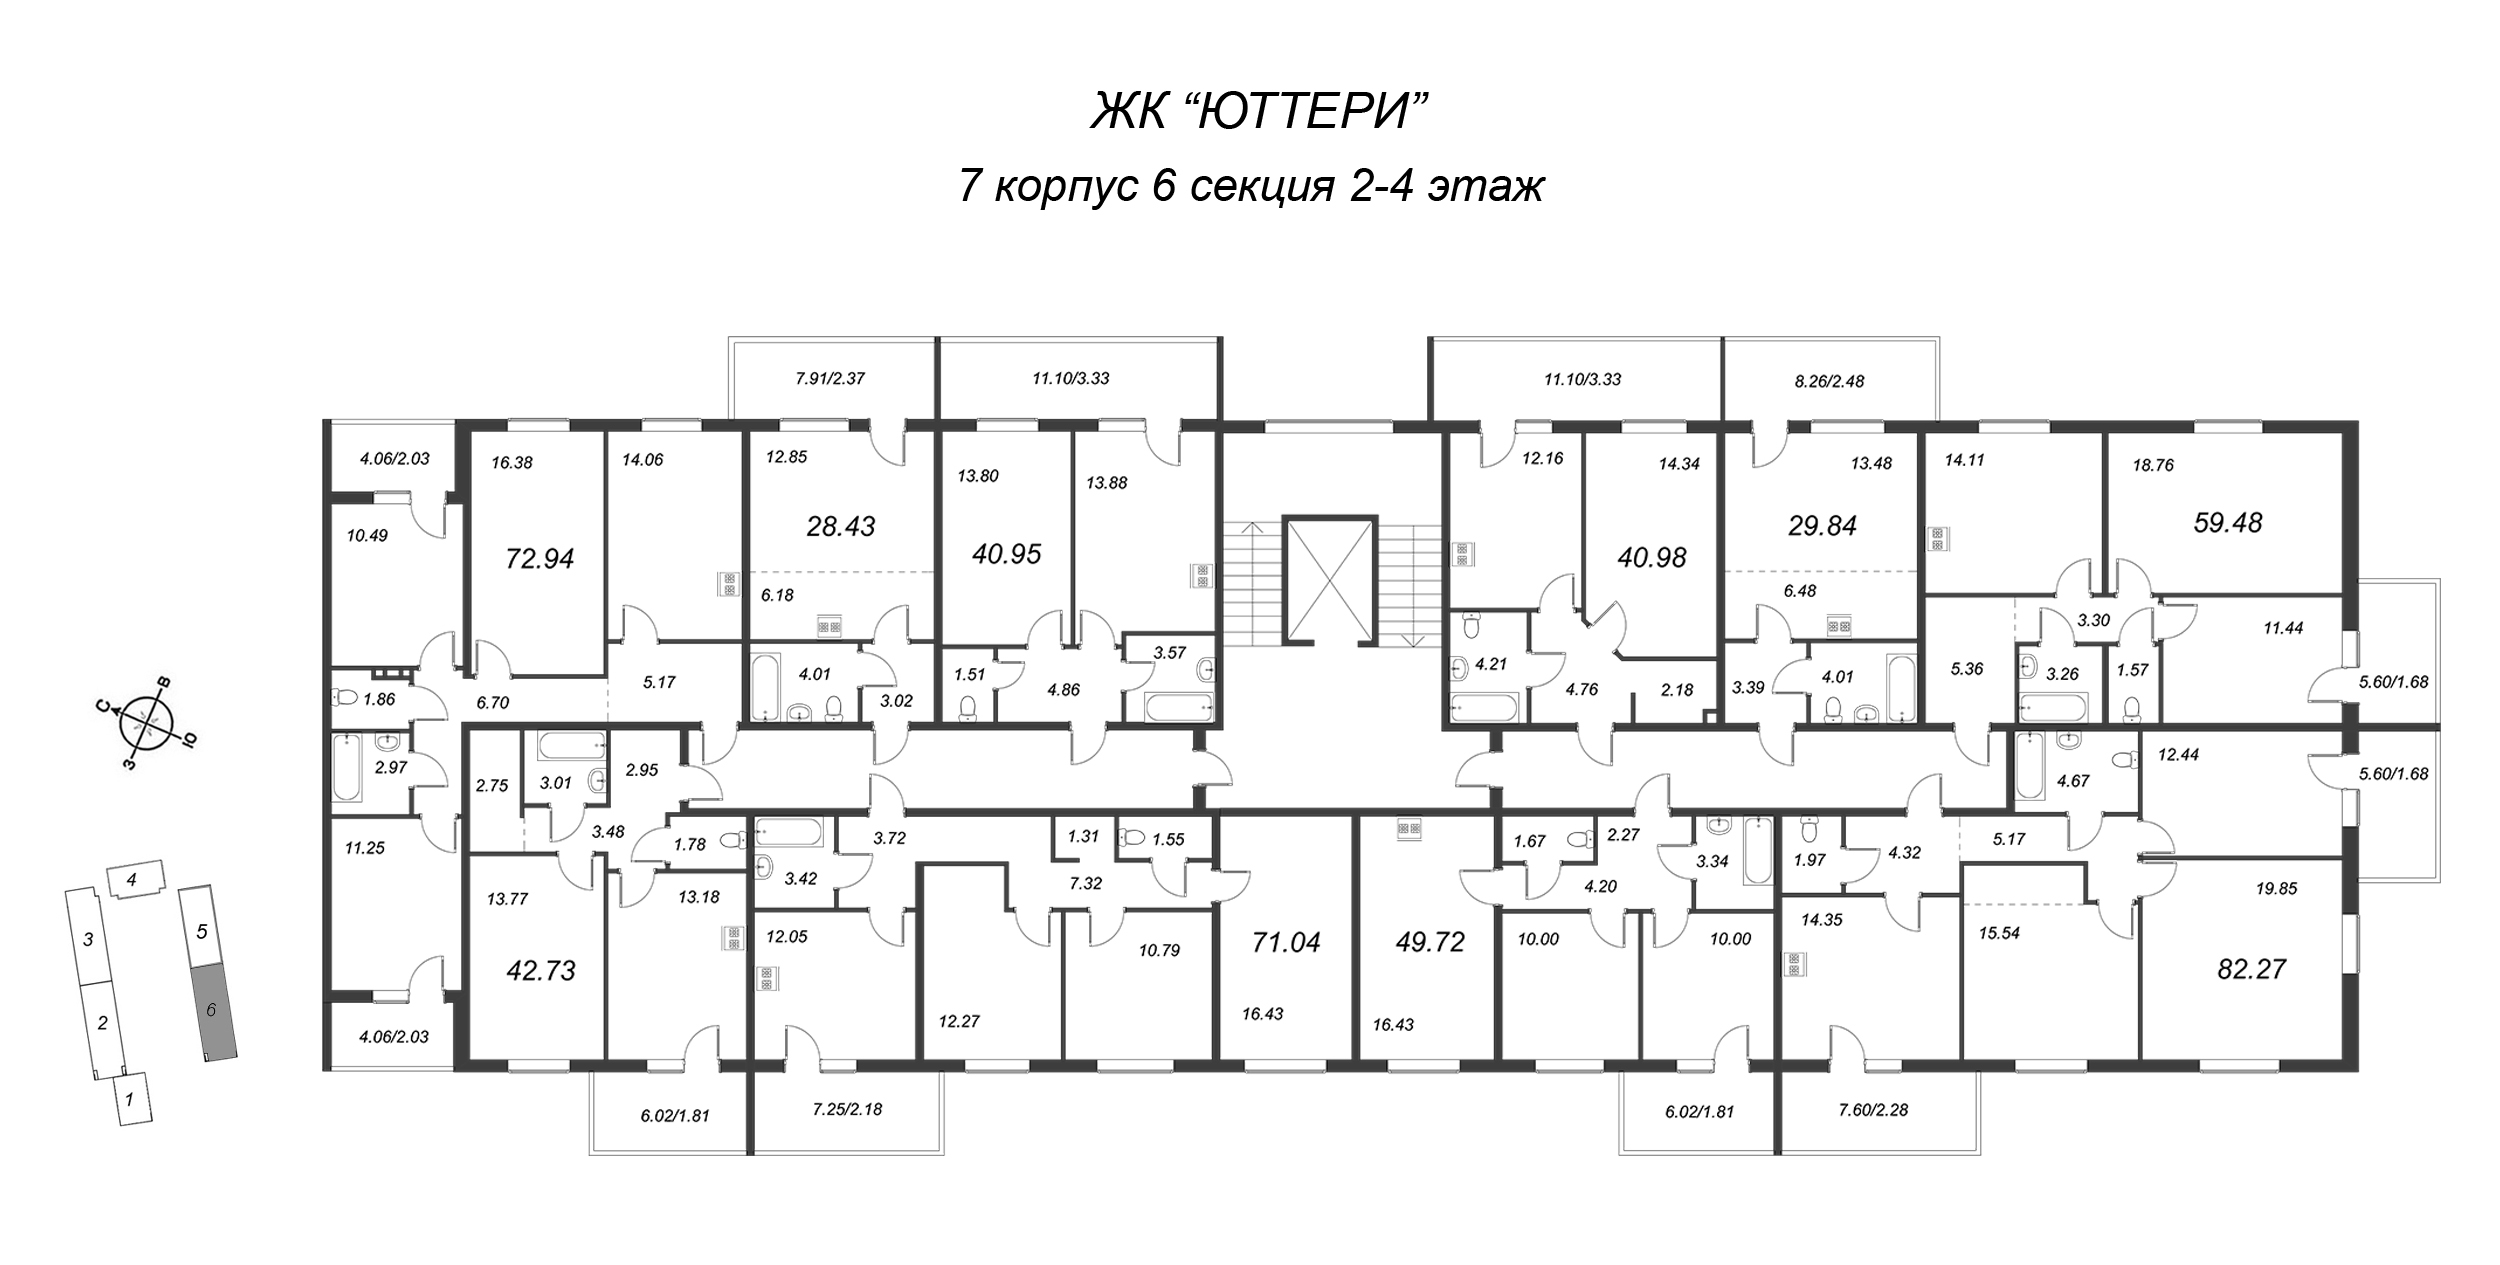 3-комнатная квартира, 68.86 м² в ЖК "Юттери" - планировка этажа